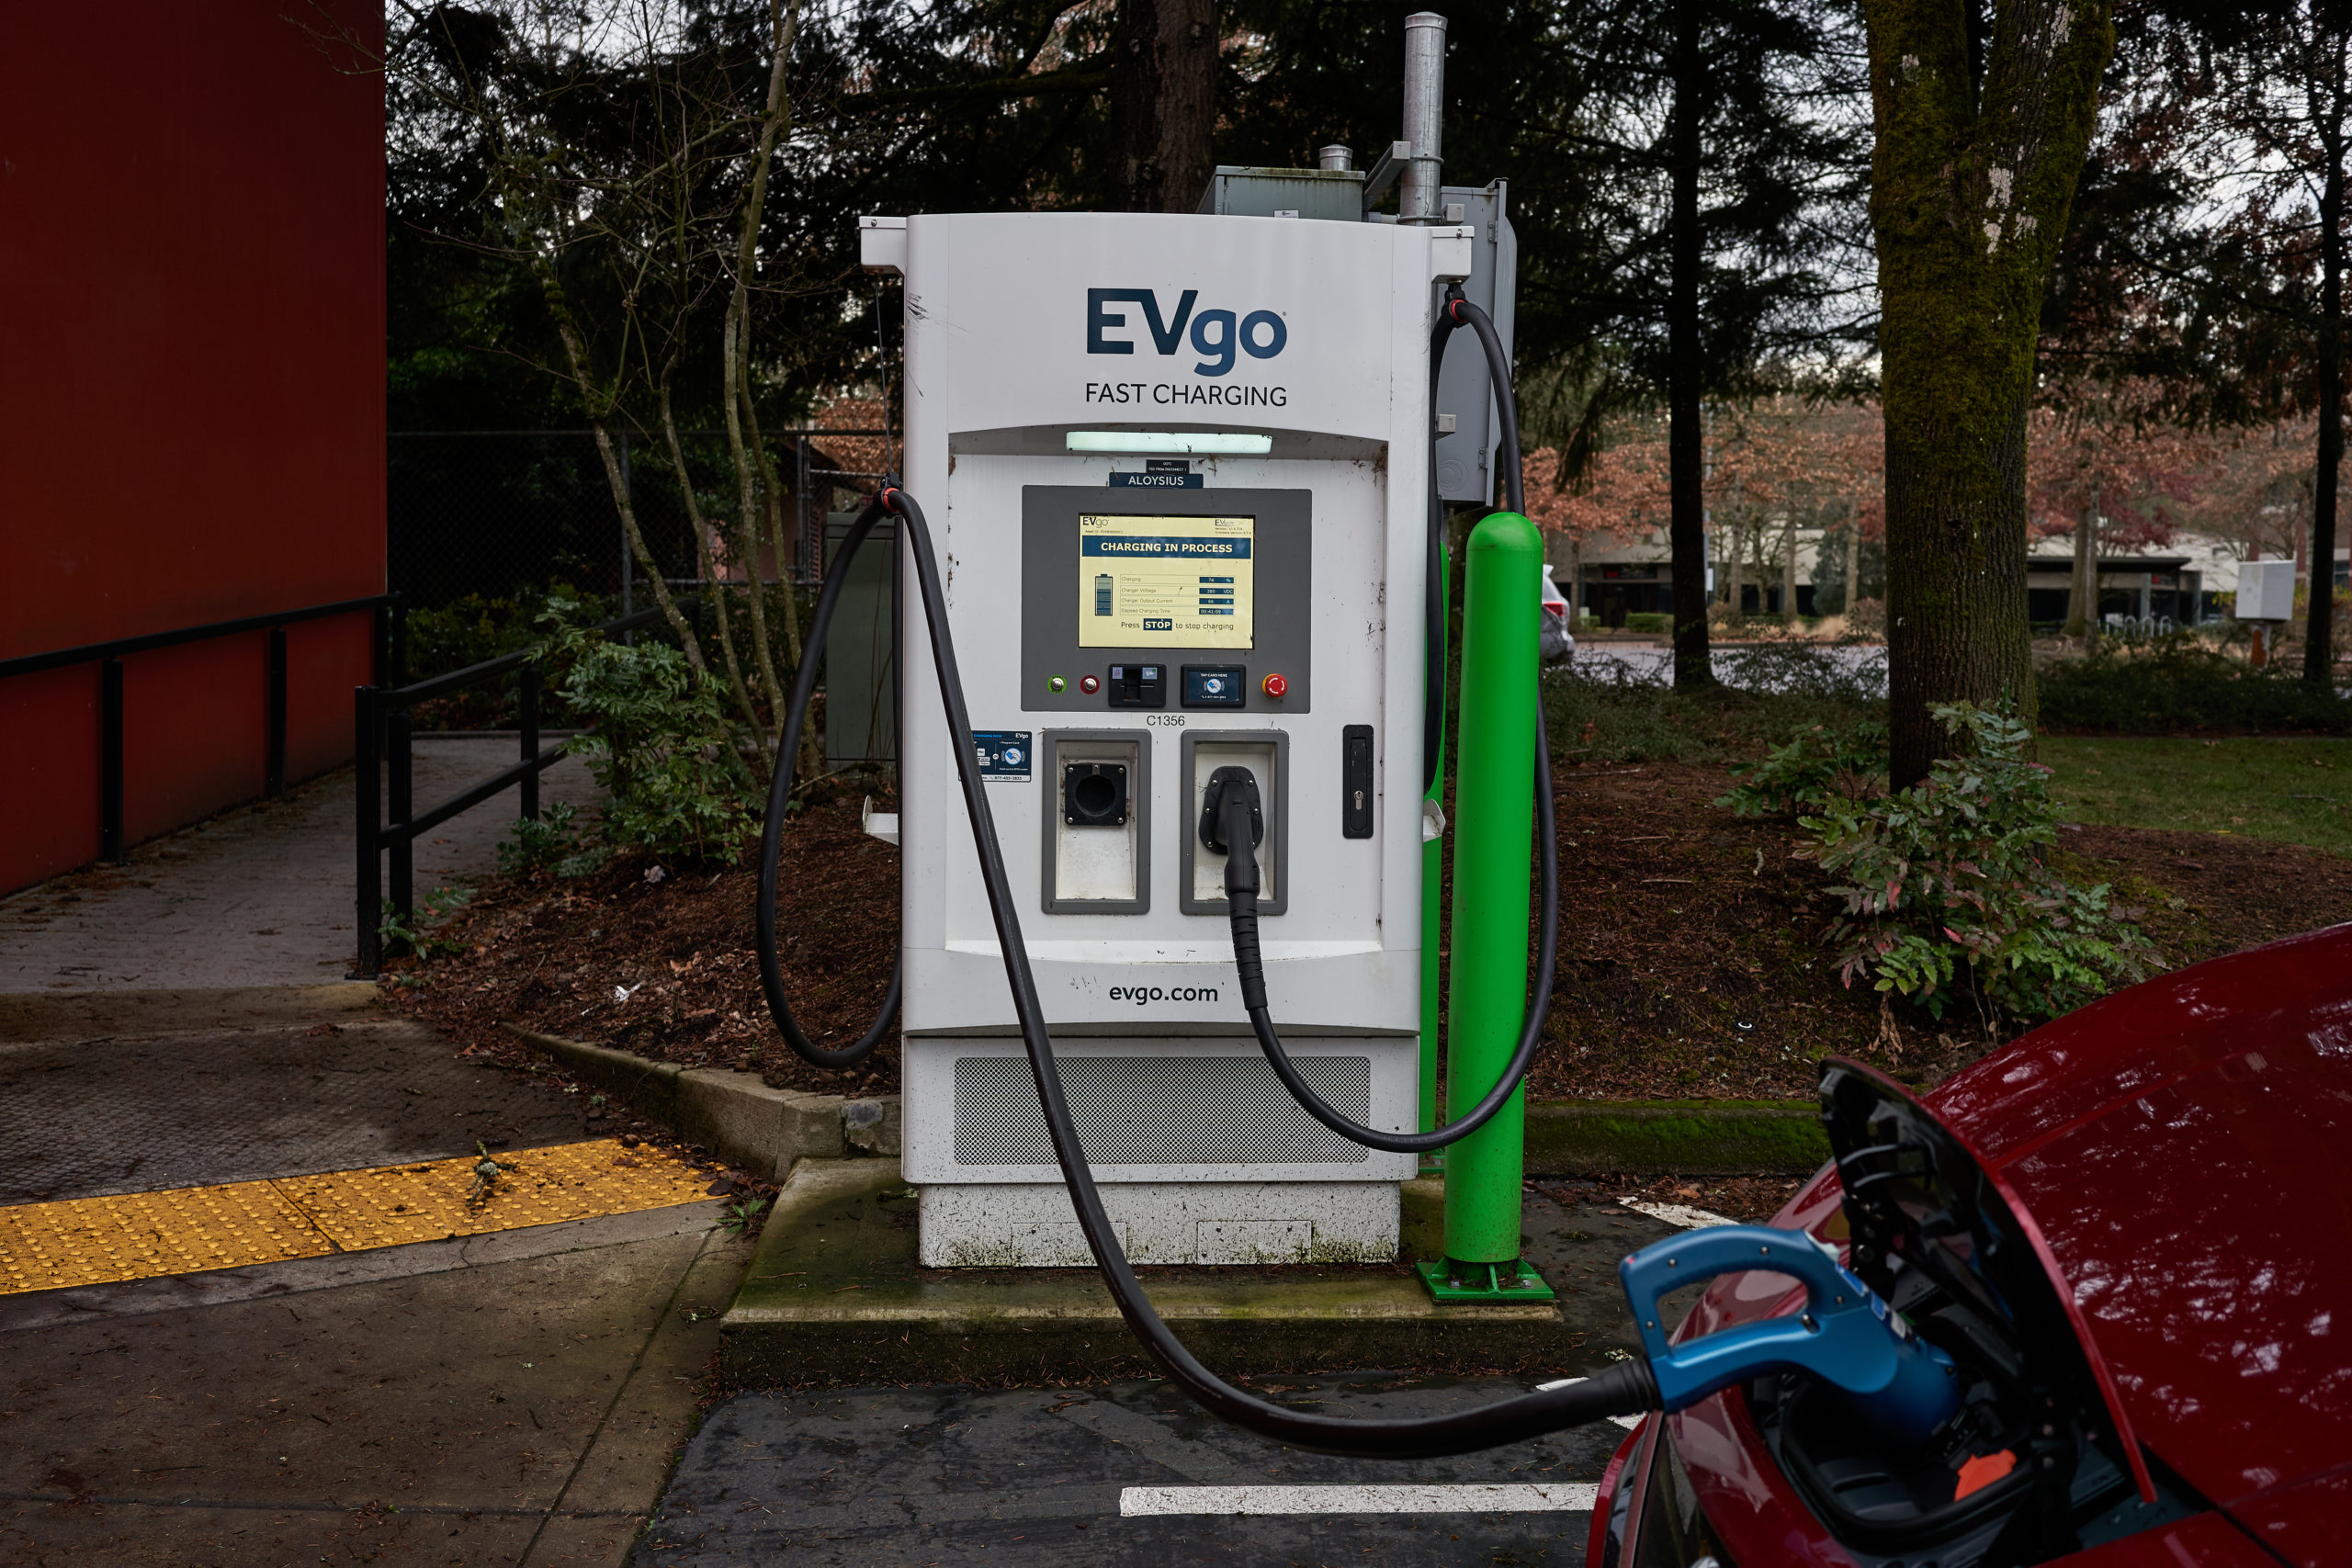 evgo charging station charging leaf